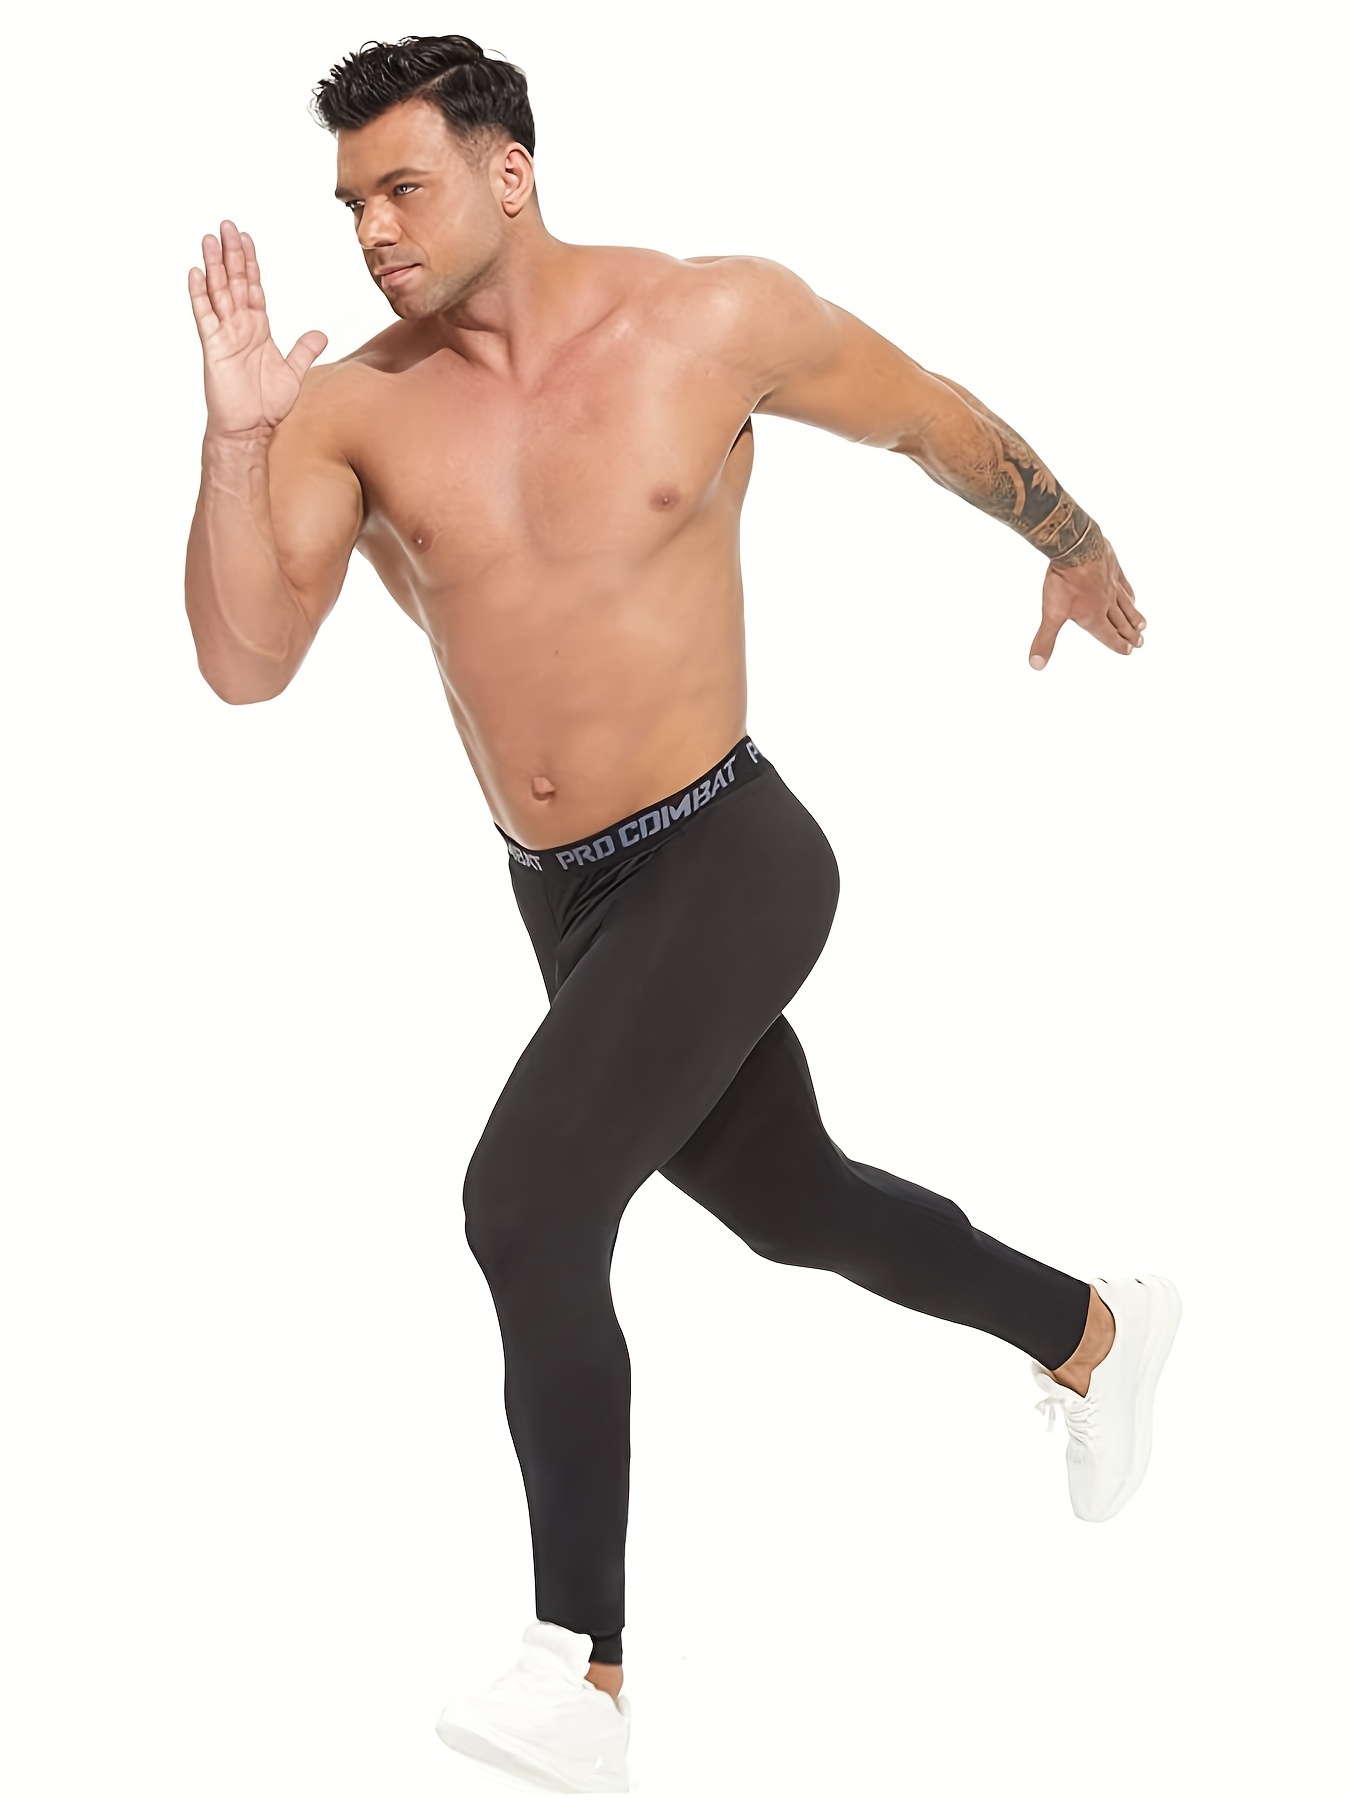 TELALEO Paquete de 6, 5 o 4 pantalones de compresión para hombre, mallas  deportivas, de rendimiento atlético, capa base, entrenamiento, correr